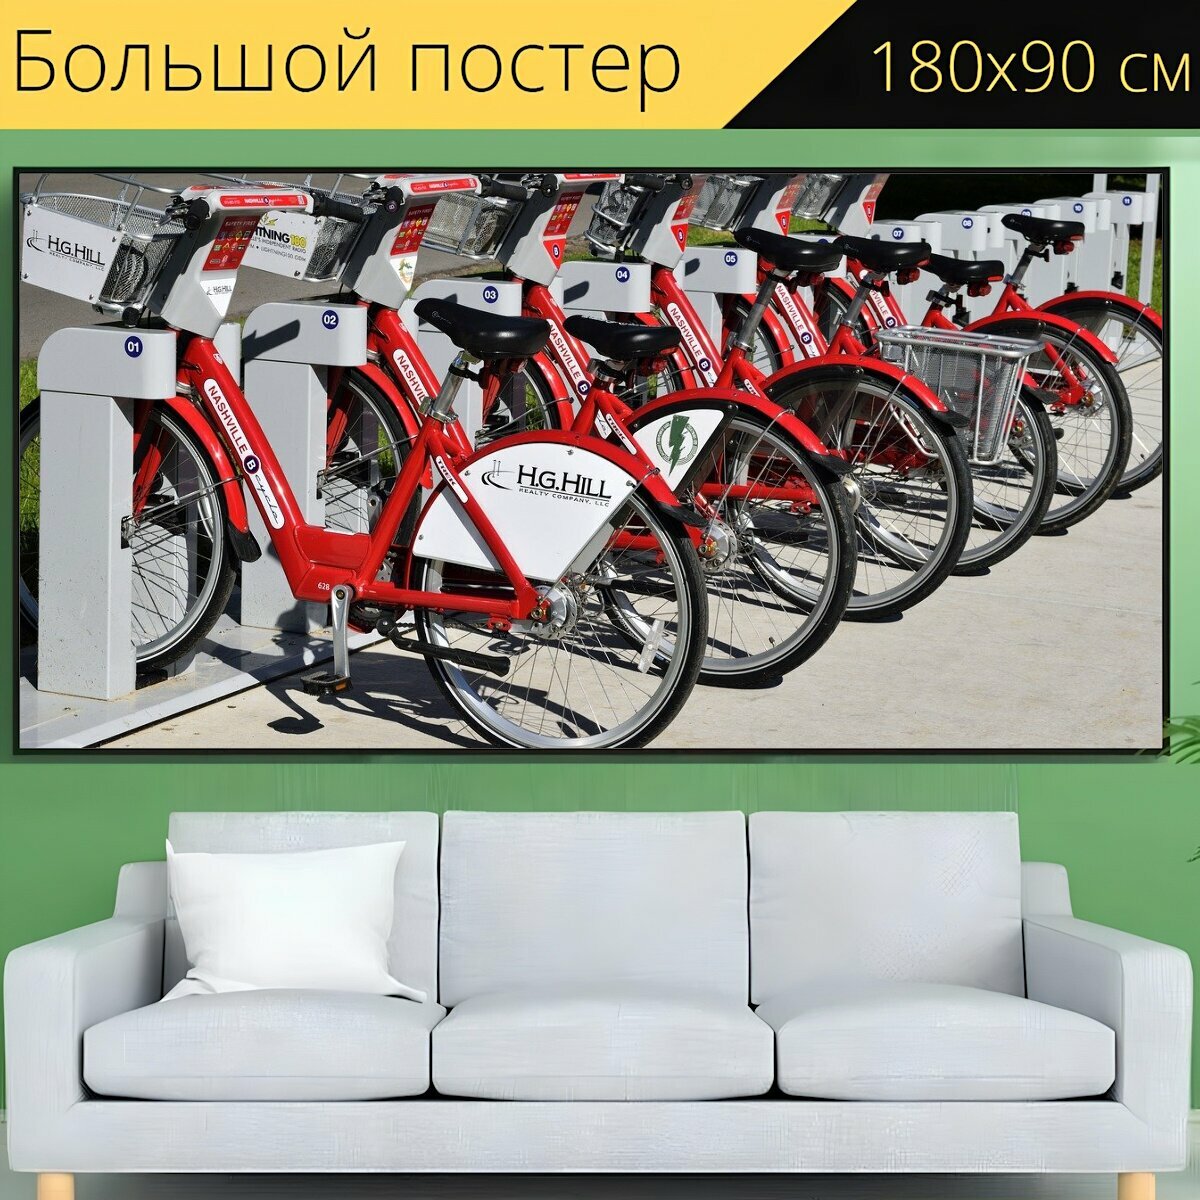 Большой постер "Прокат велосипедов, велосипеды, арендовать" 180 x 90 см. для интерьера